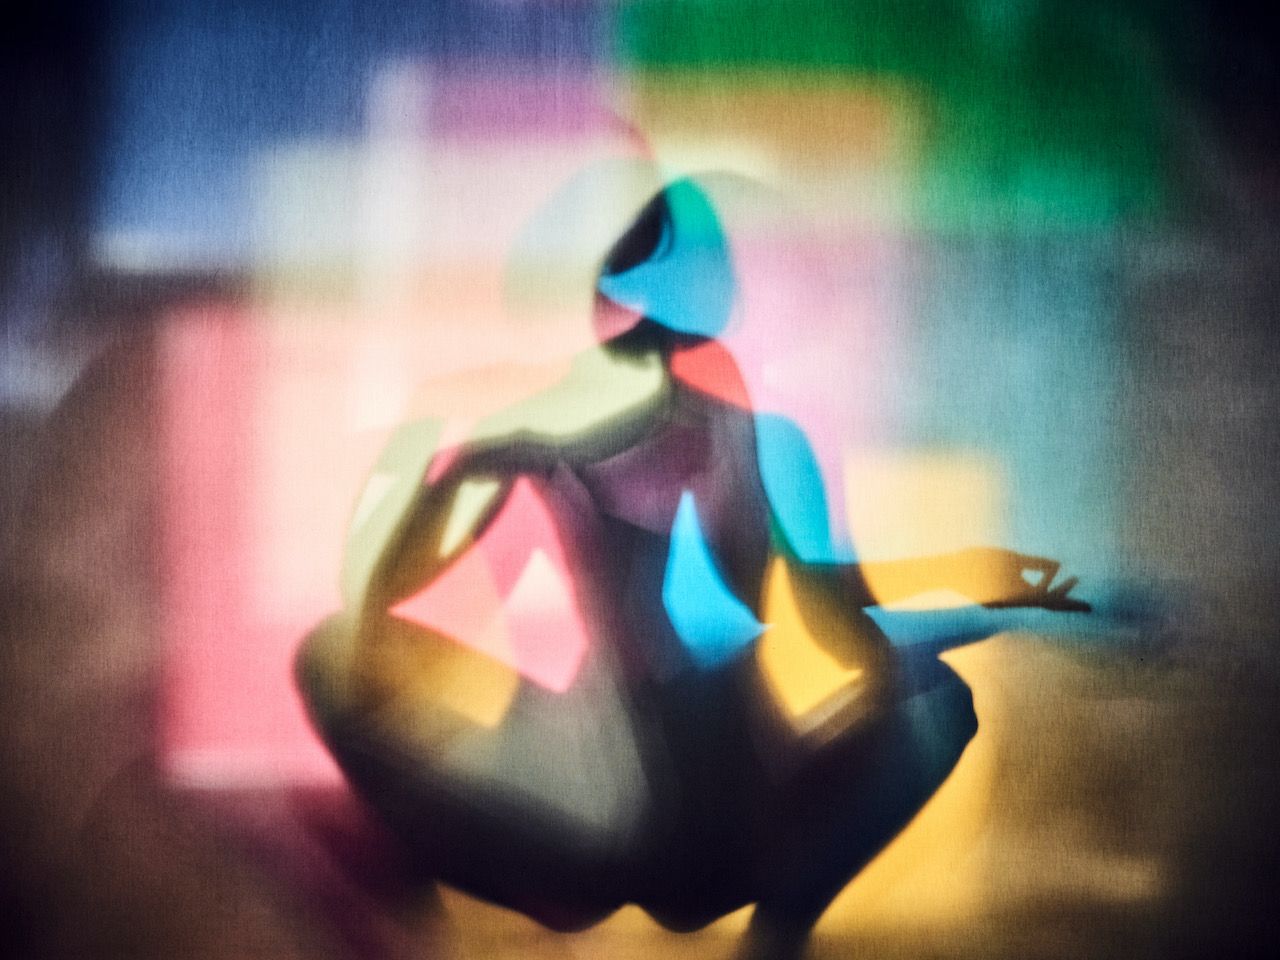 Michael Haegele fotografia astratta sovrapposizione di silhouette di donna accovacciata con capelli corti e quadrati colorati sullo sfondo